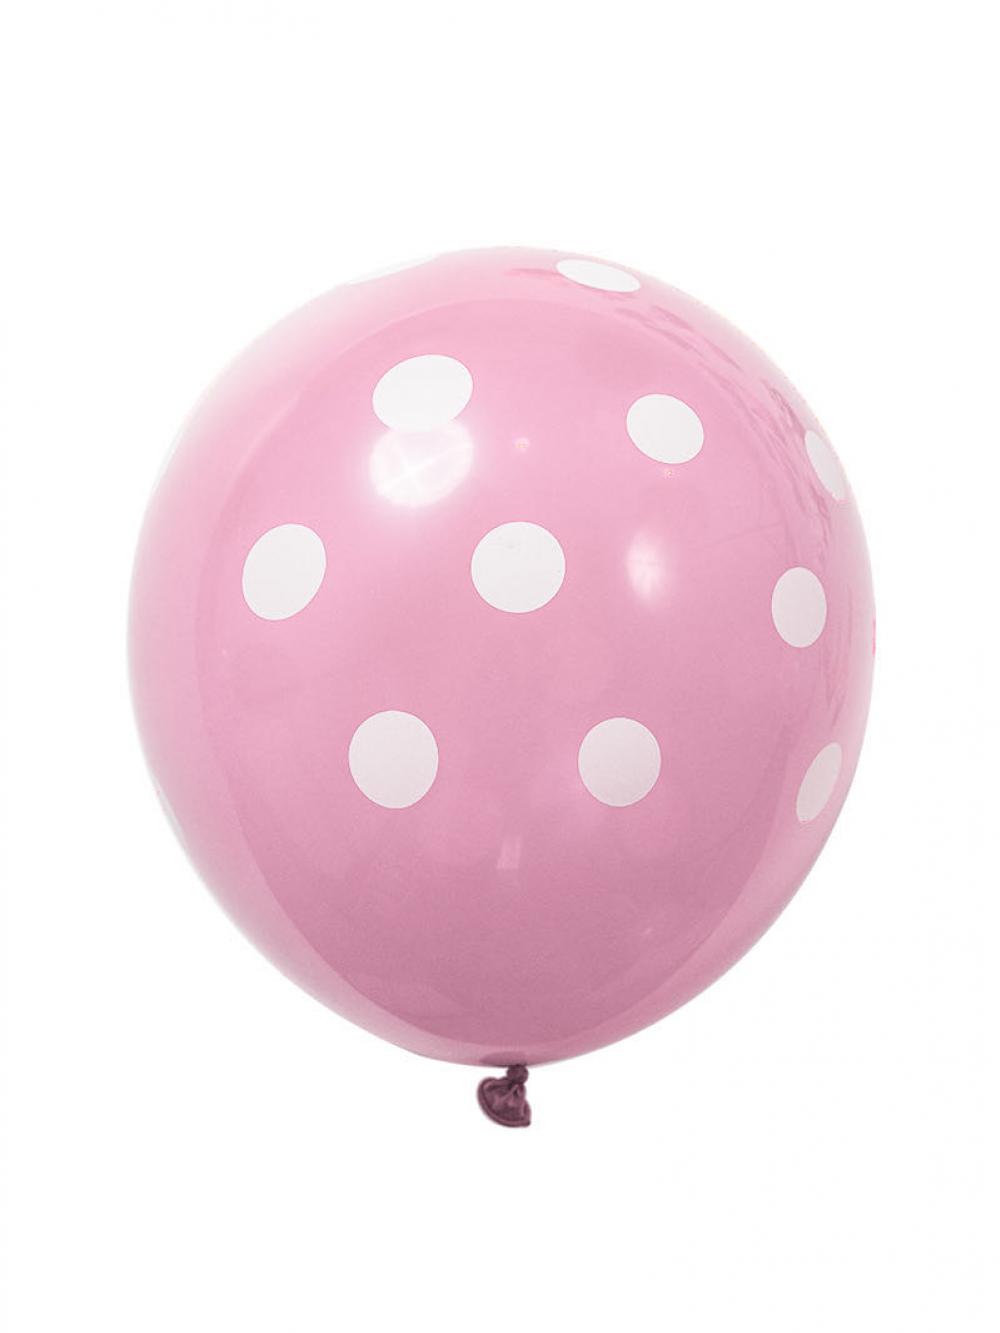 12 Inch Standard Polka Dot Balloons Pale Pink Balloon White Dot (10PCS)